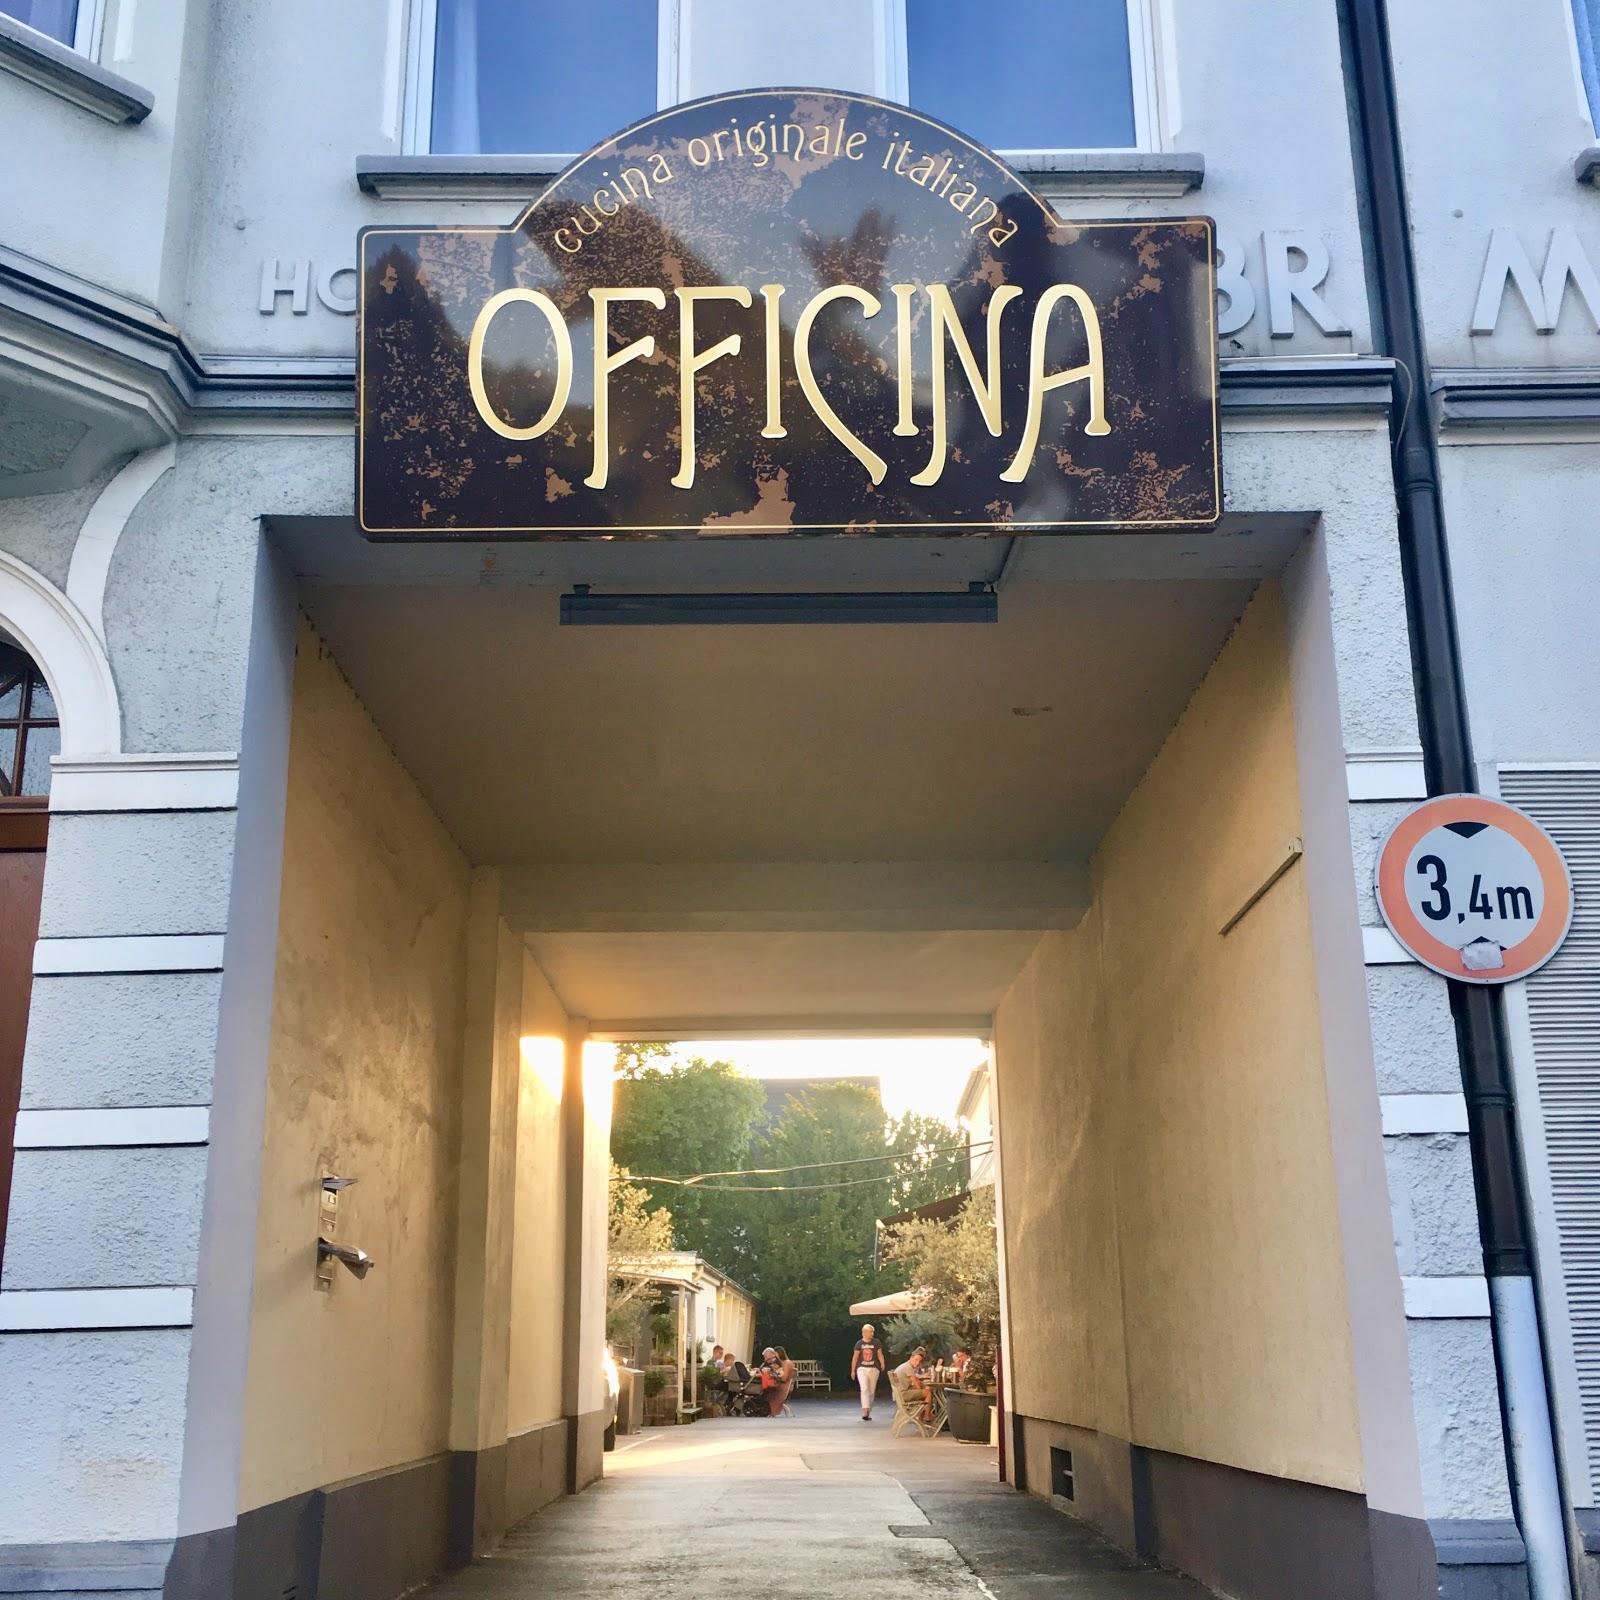 Restaurant "Officina" in  Essen